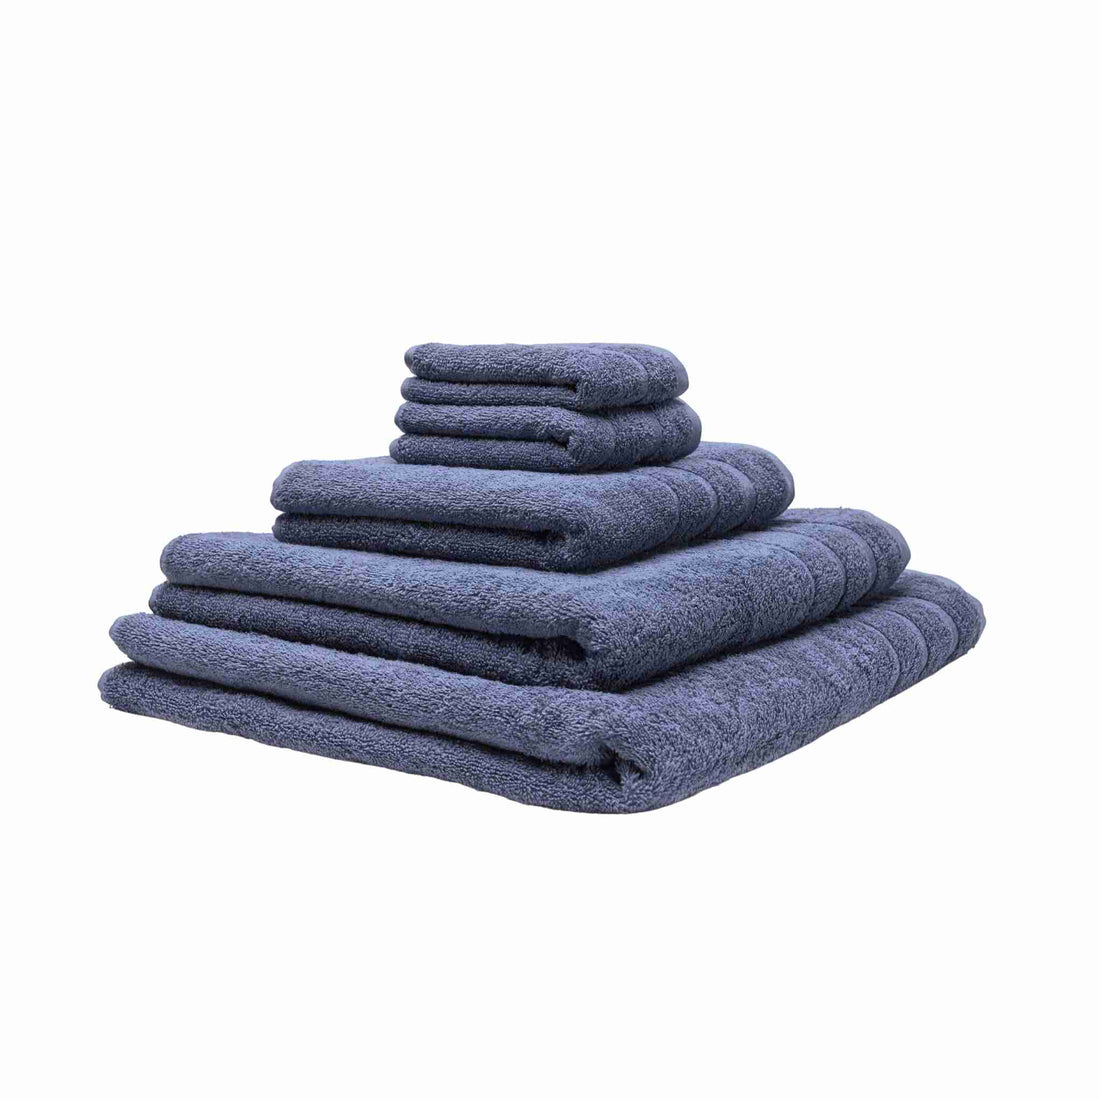 Fem økologiske håndklæder stablet oven på hinanden. Farven er gråblå.